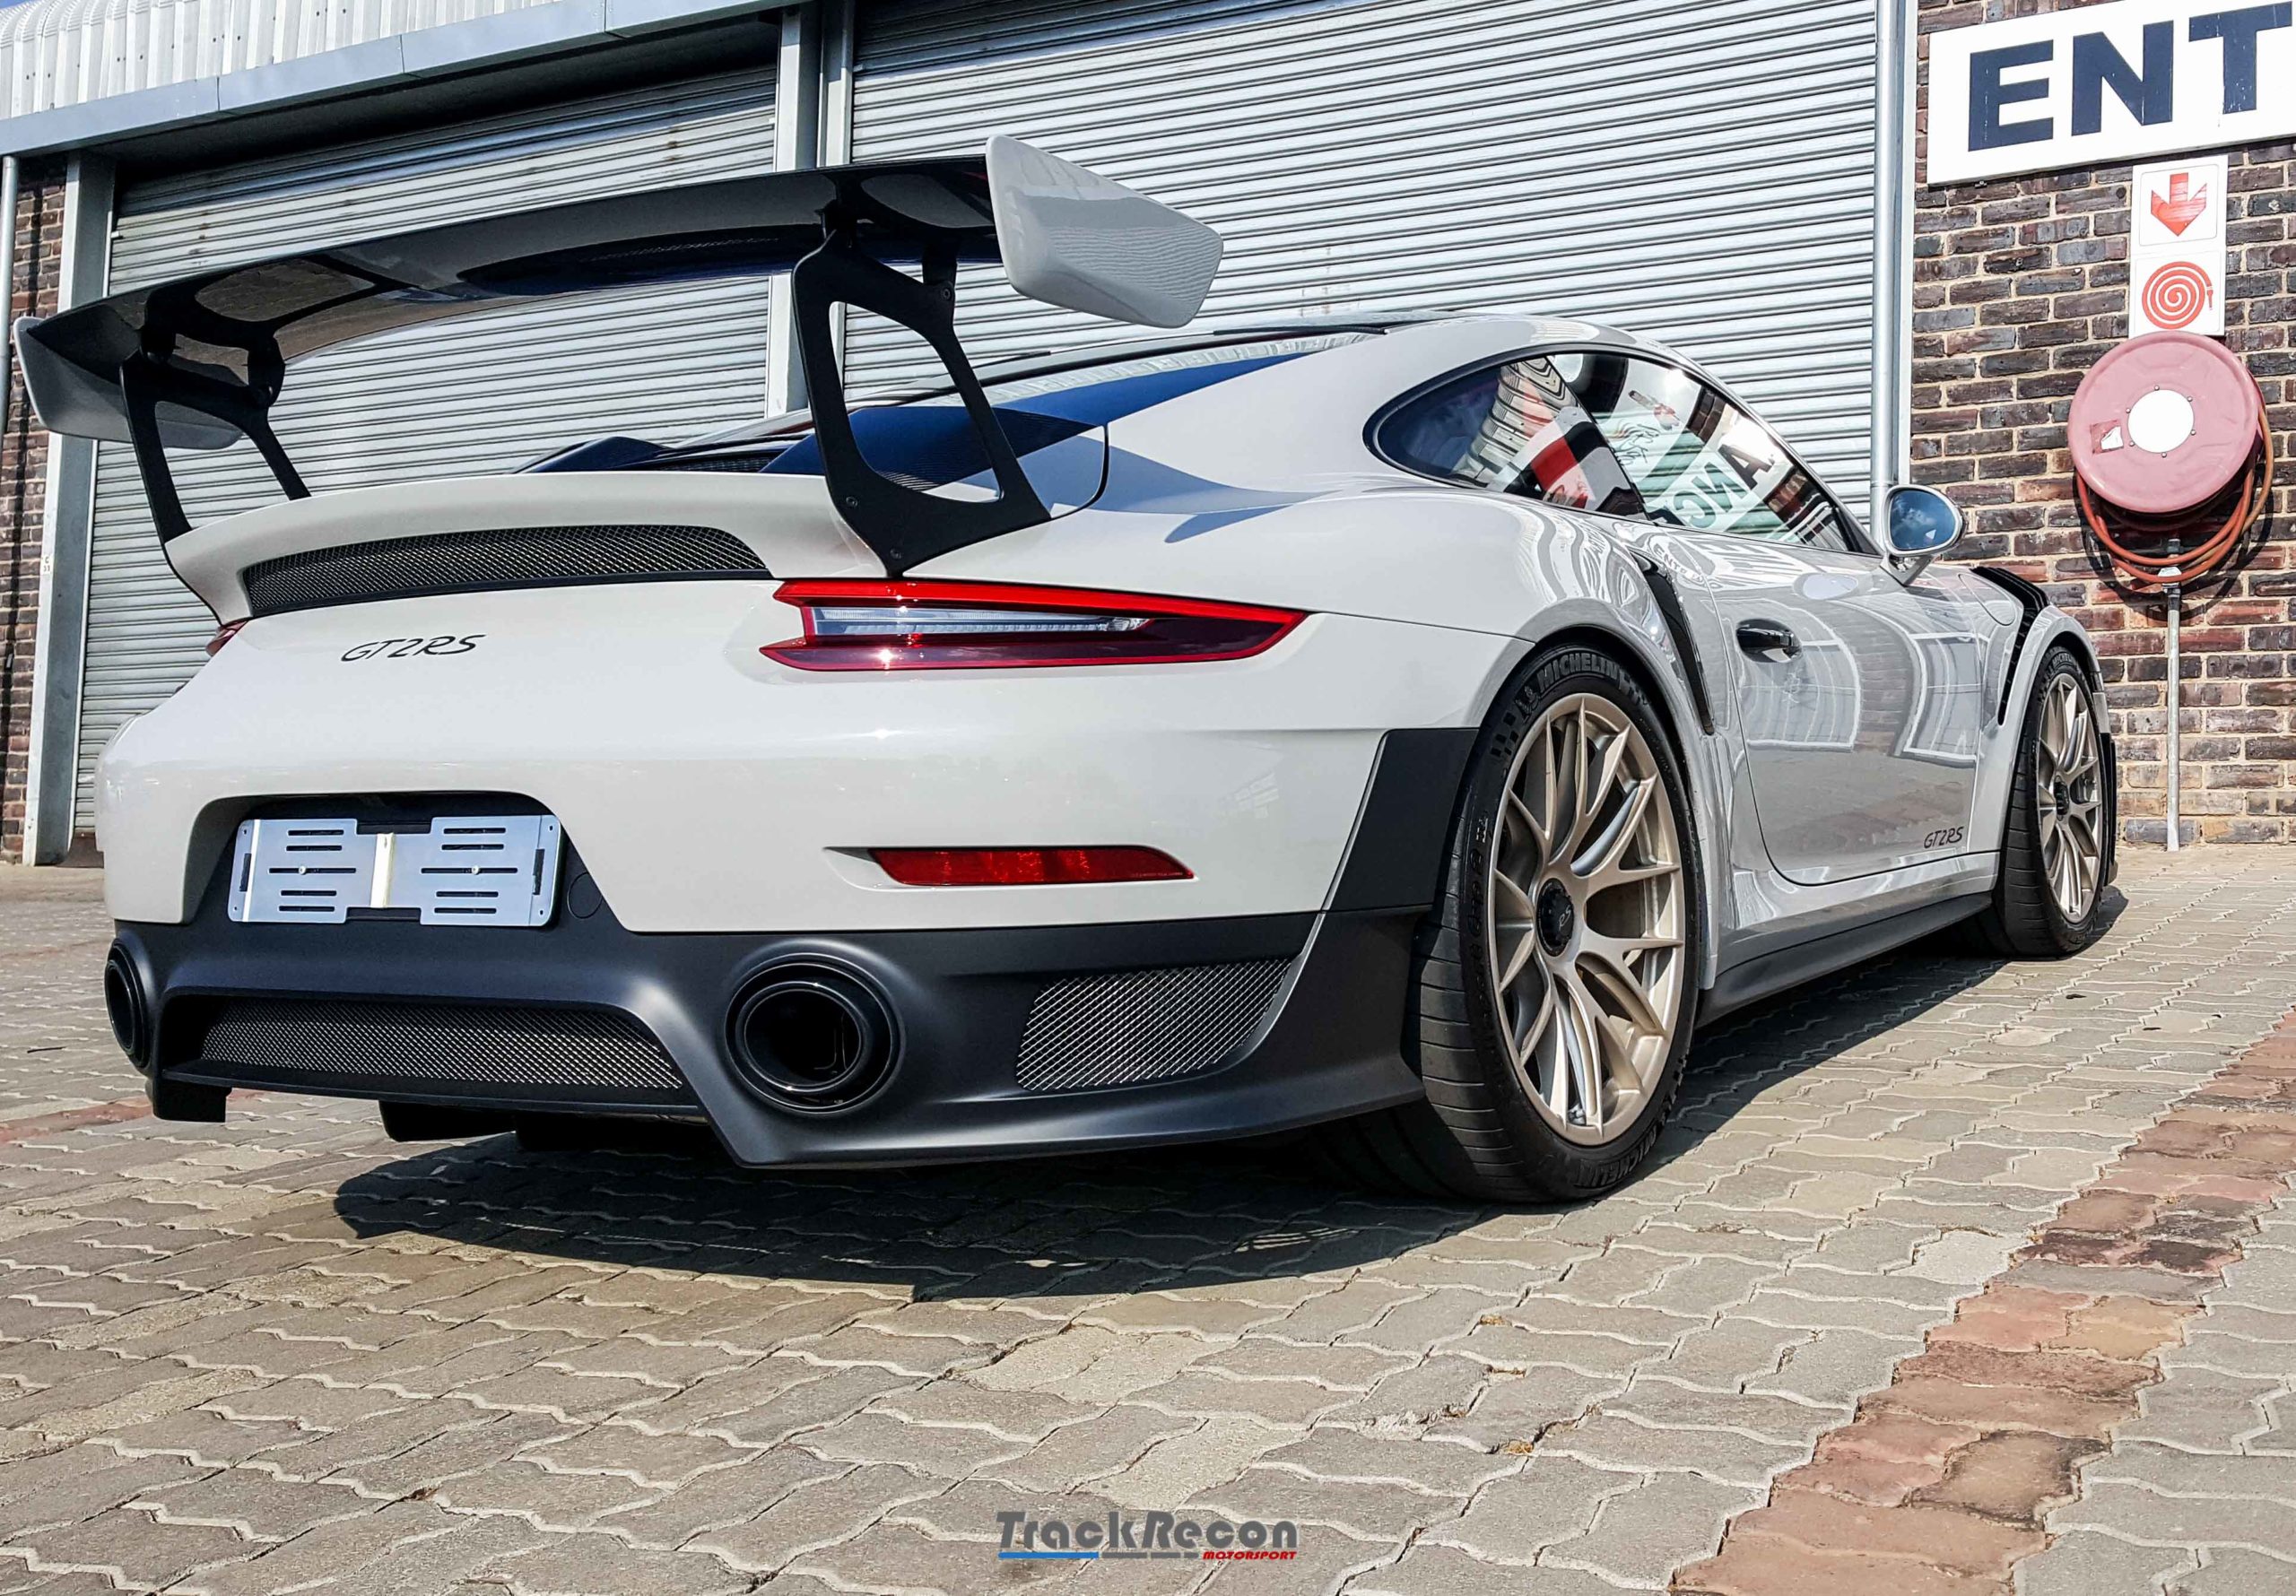 TrackRecon Zwartkopz 2019 Porsche GT2RS